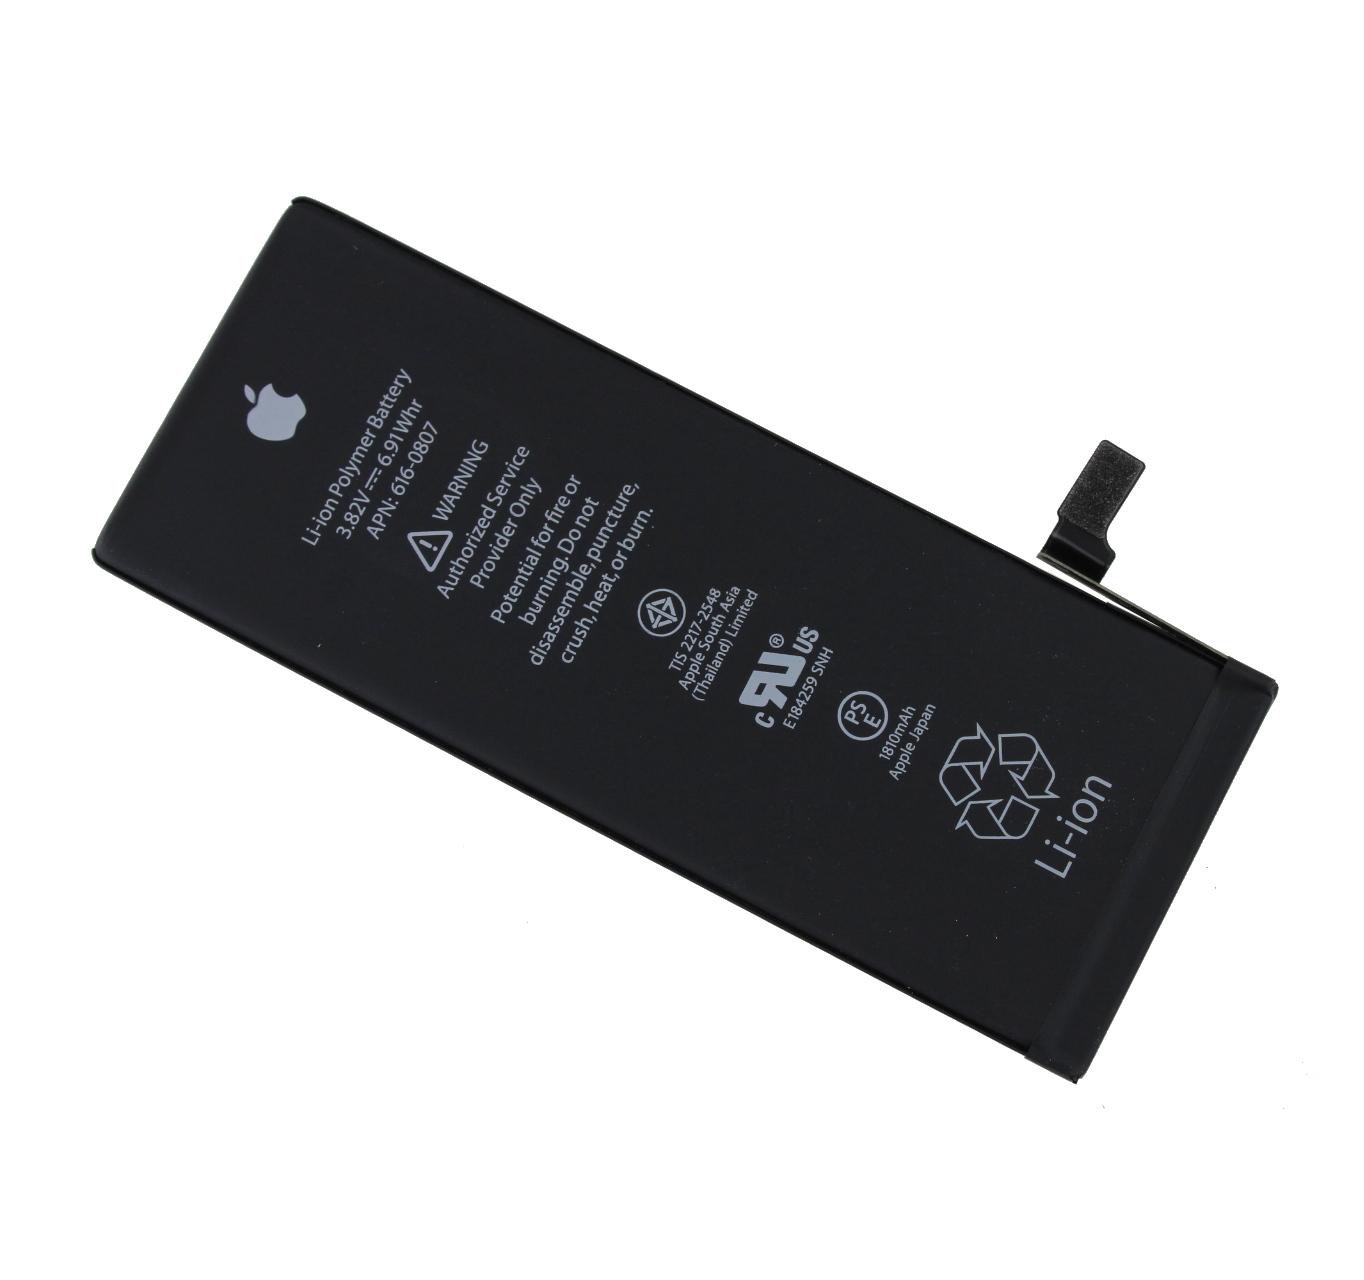 Originál baterie iPhone 6 1810 mAh Service pack